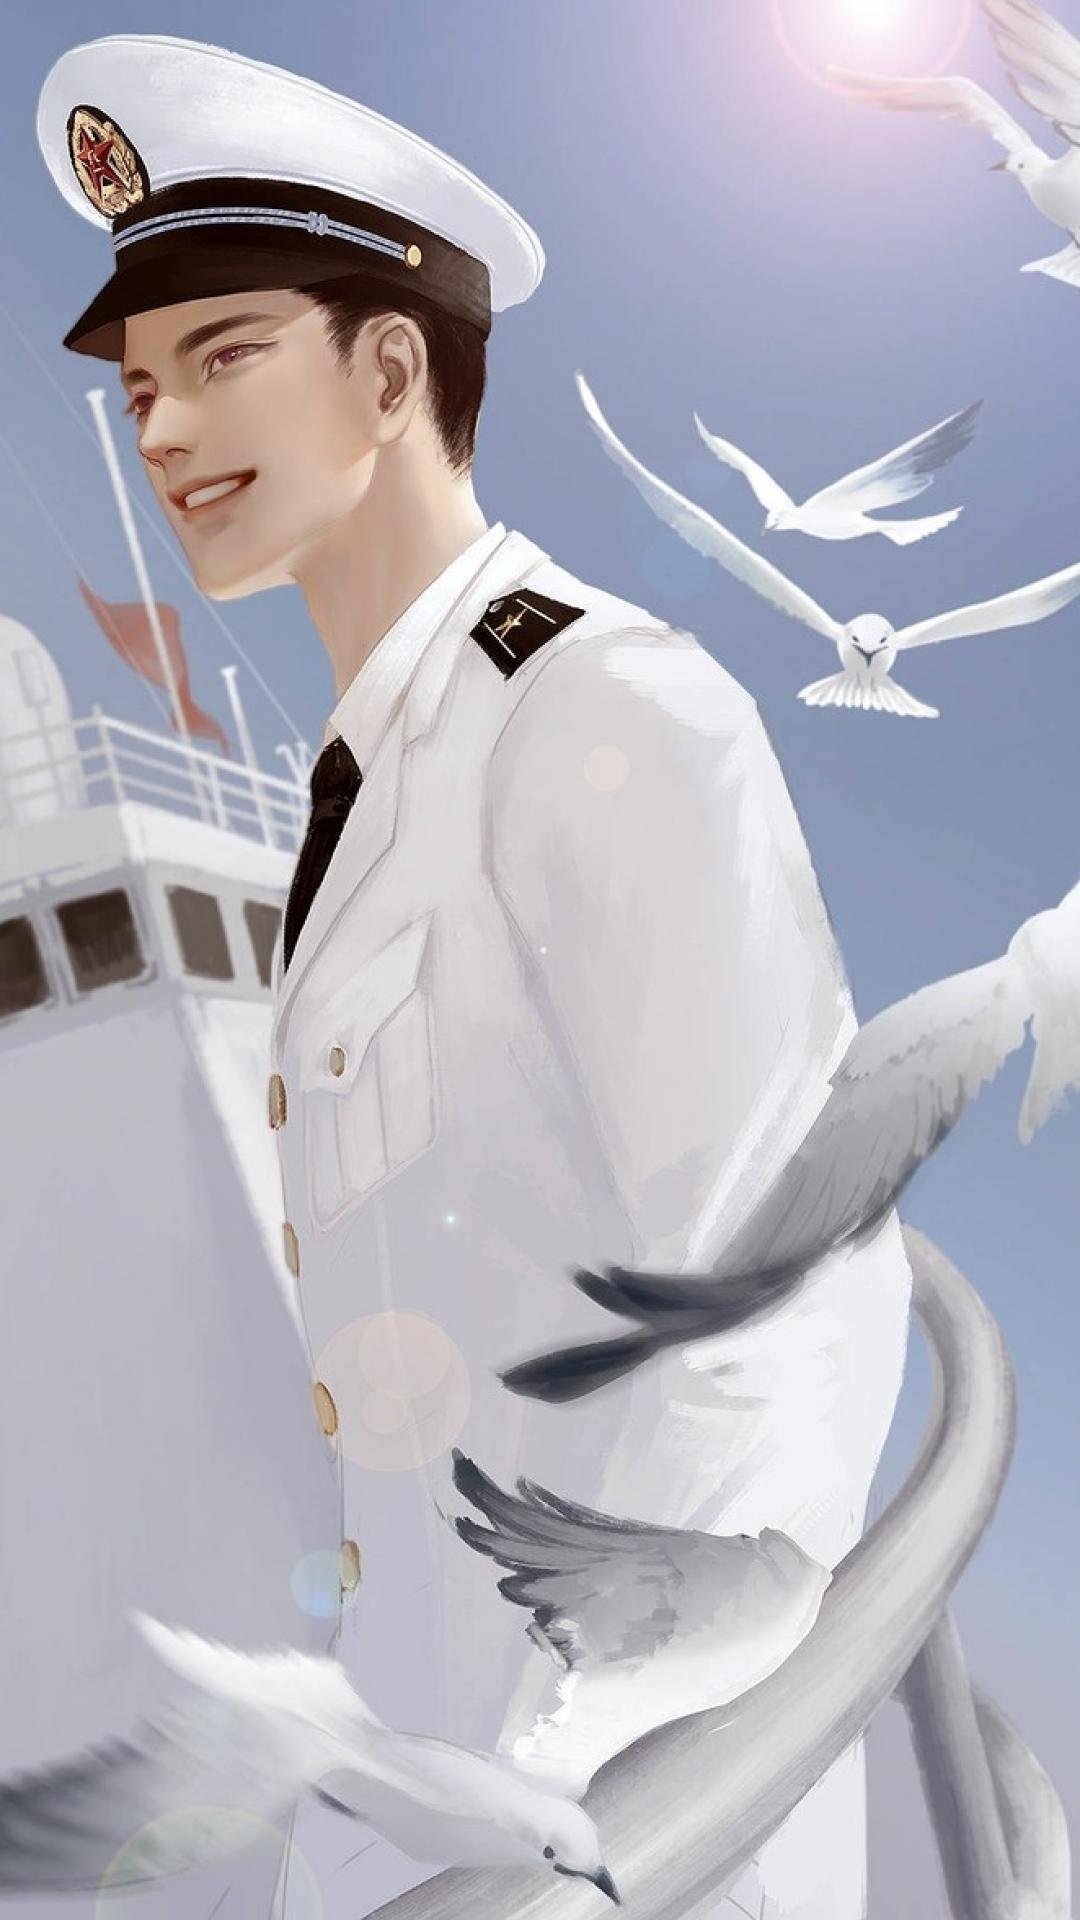 八一建军节海军军人插画,高清图片,手机壁纸